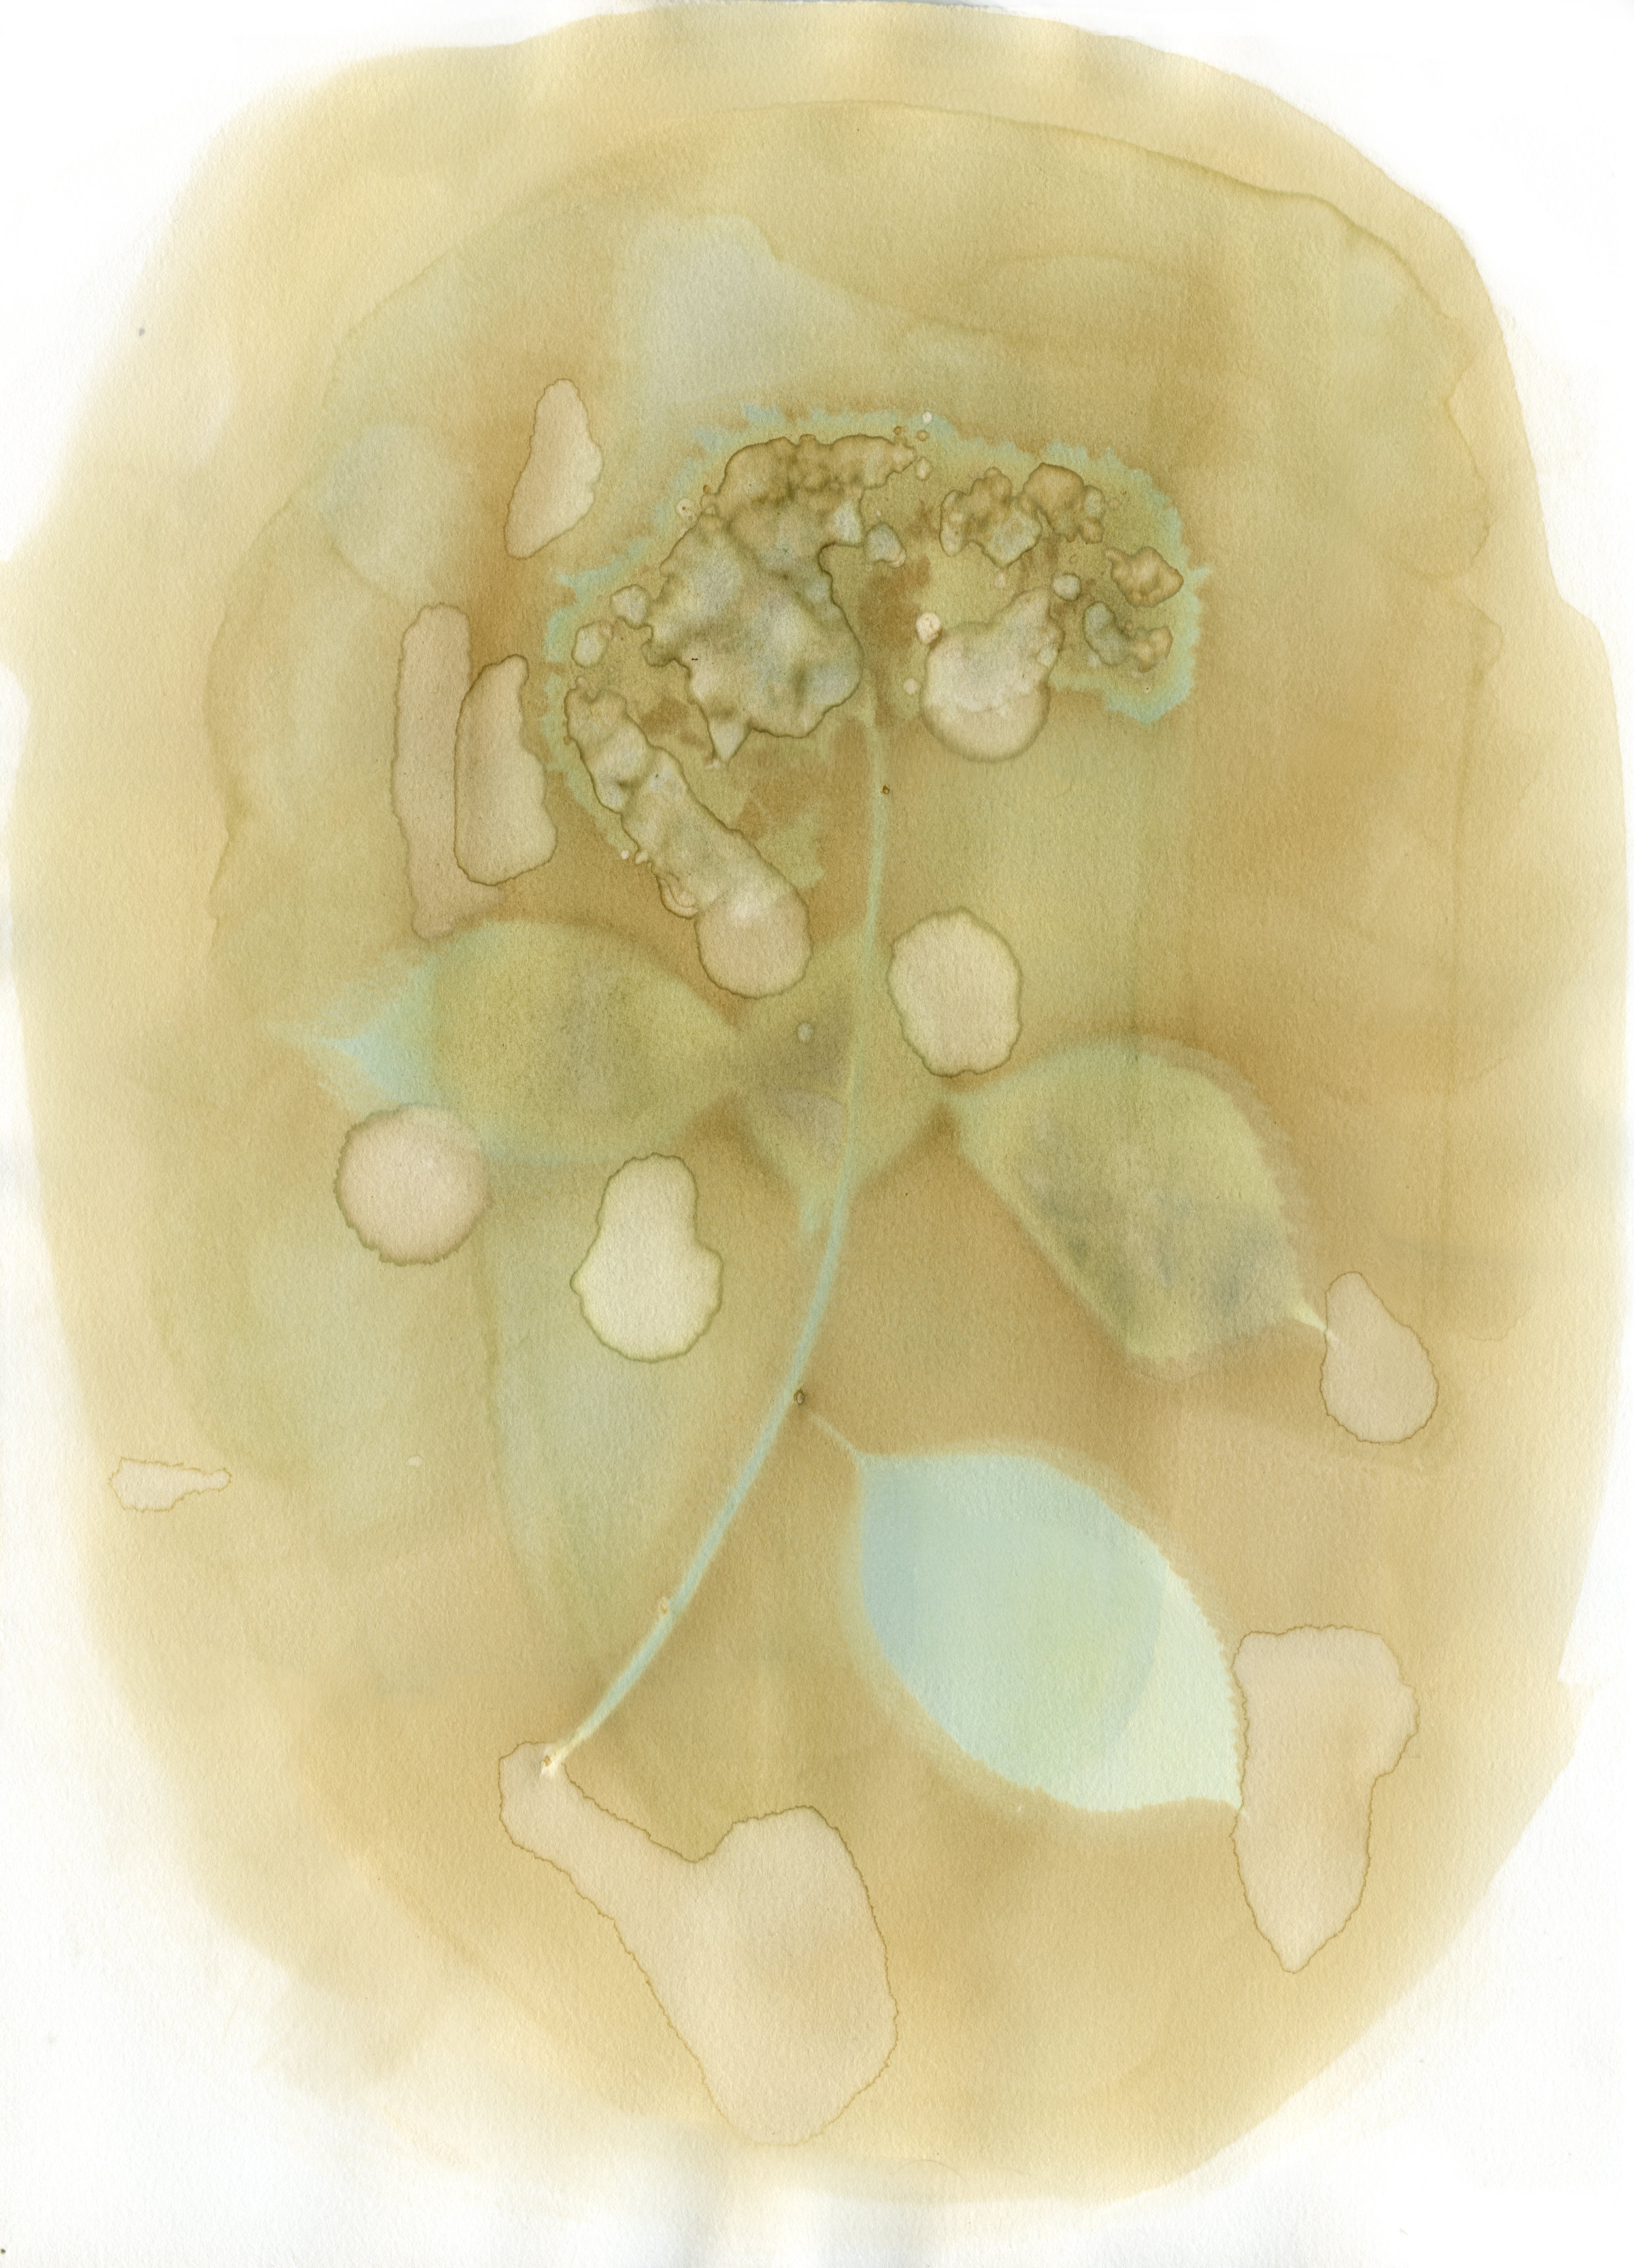 Hydrangea Macrophylla with Hydrangea Macrophylla Emulsion, 18" x 14", 2018